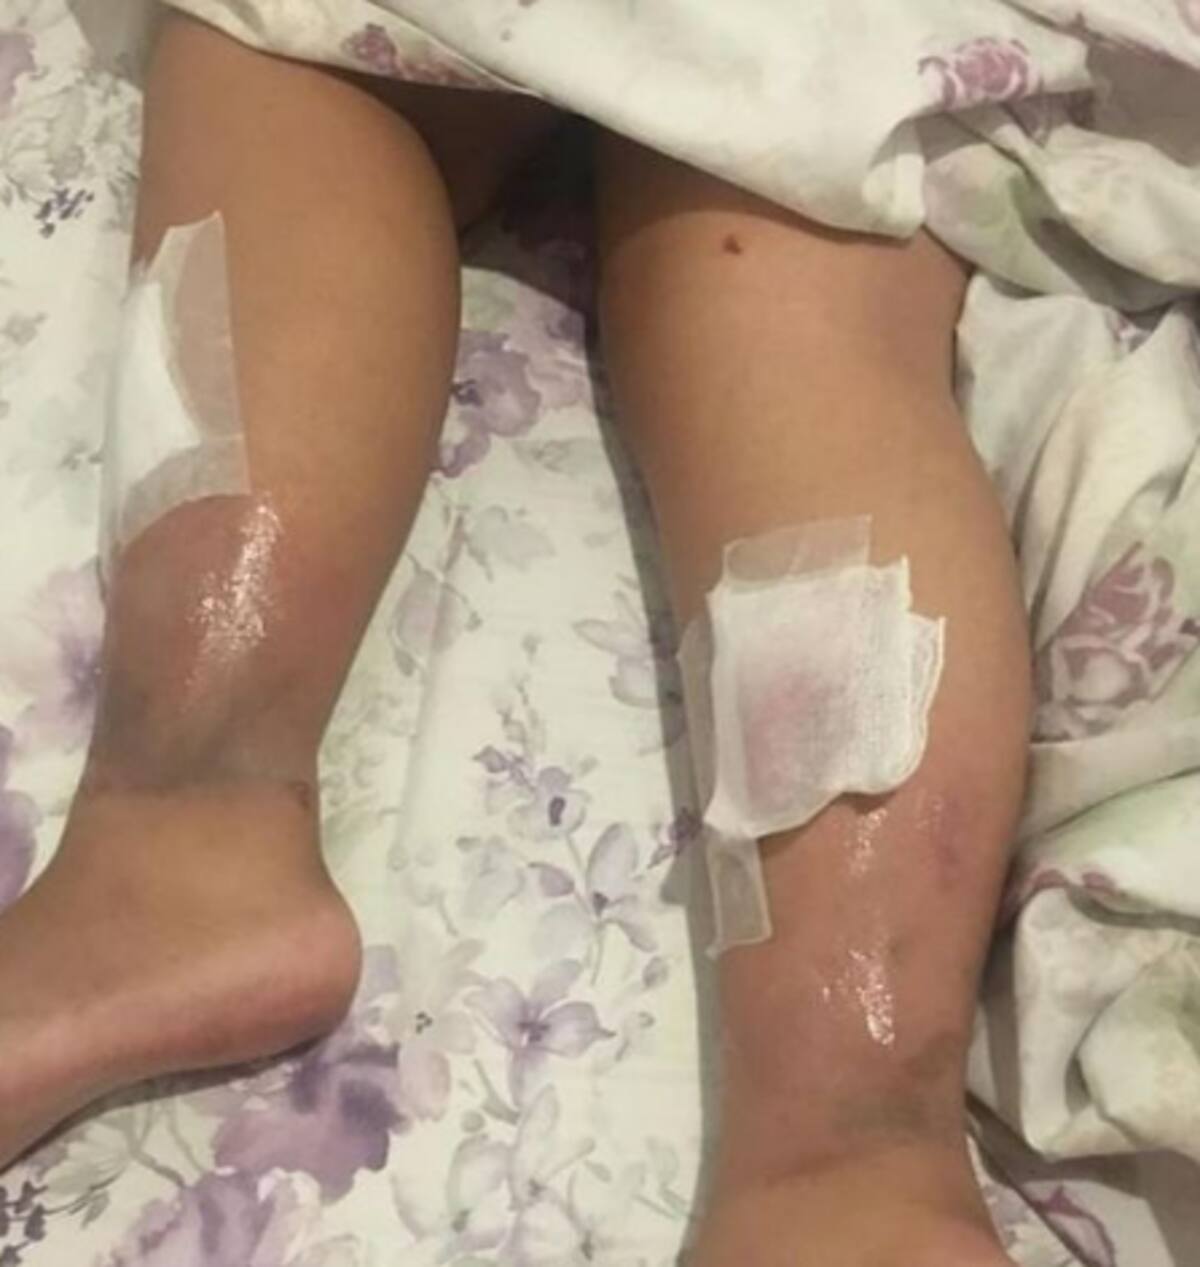 Fotos dos ferimentos foram publicadas nas redes sociais